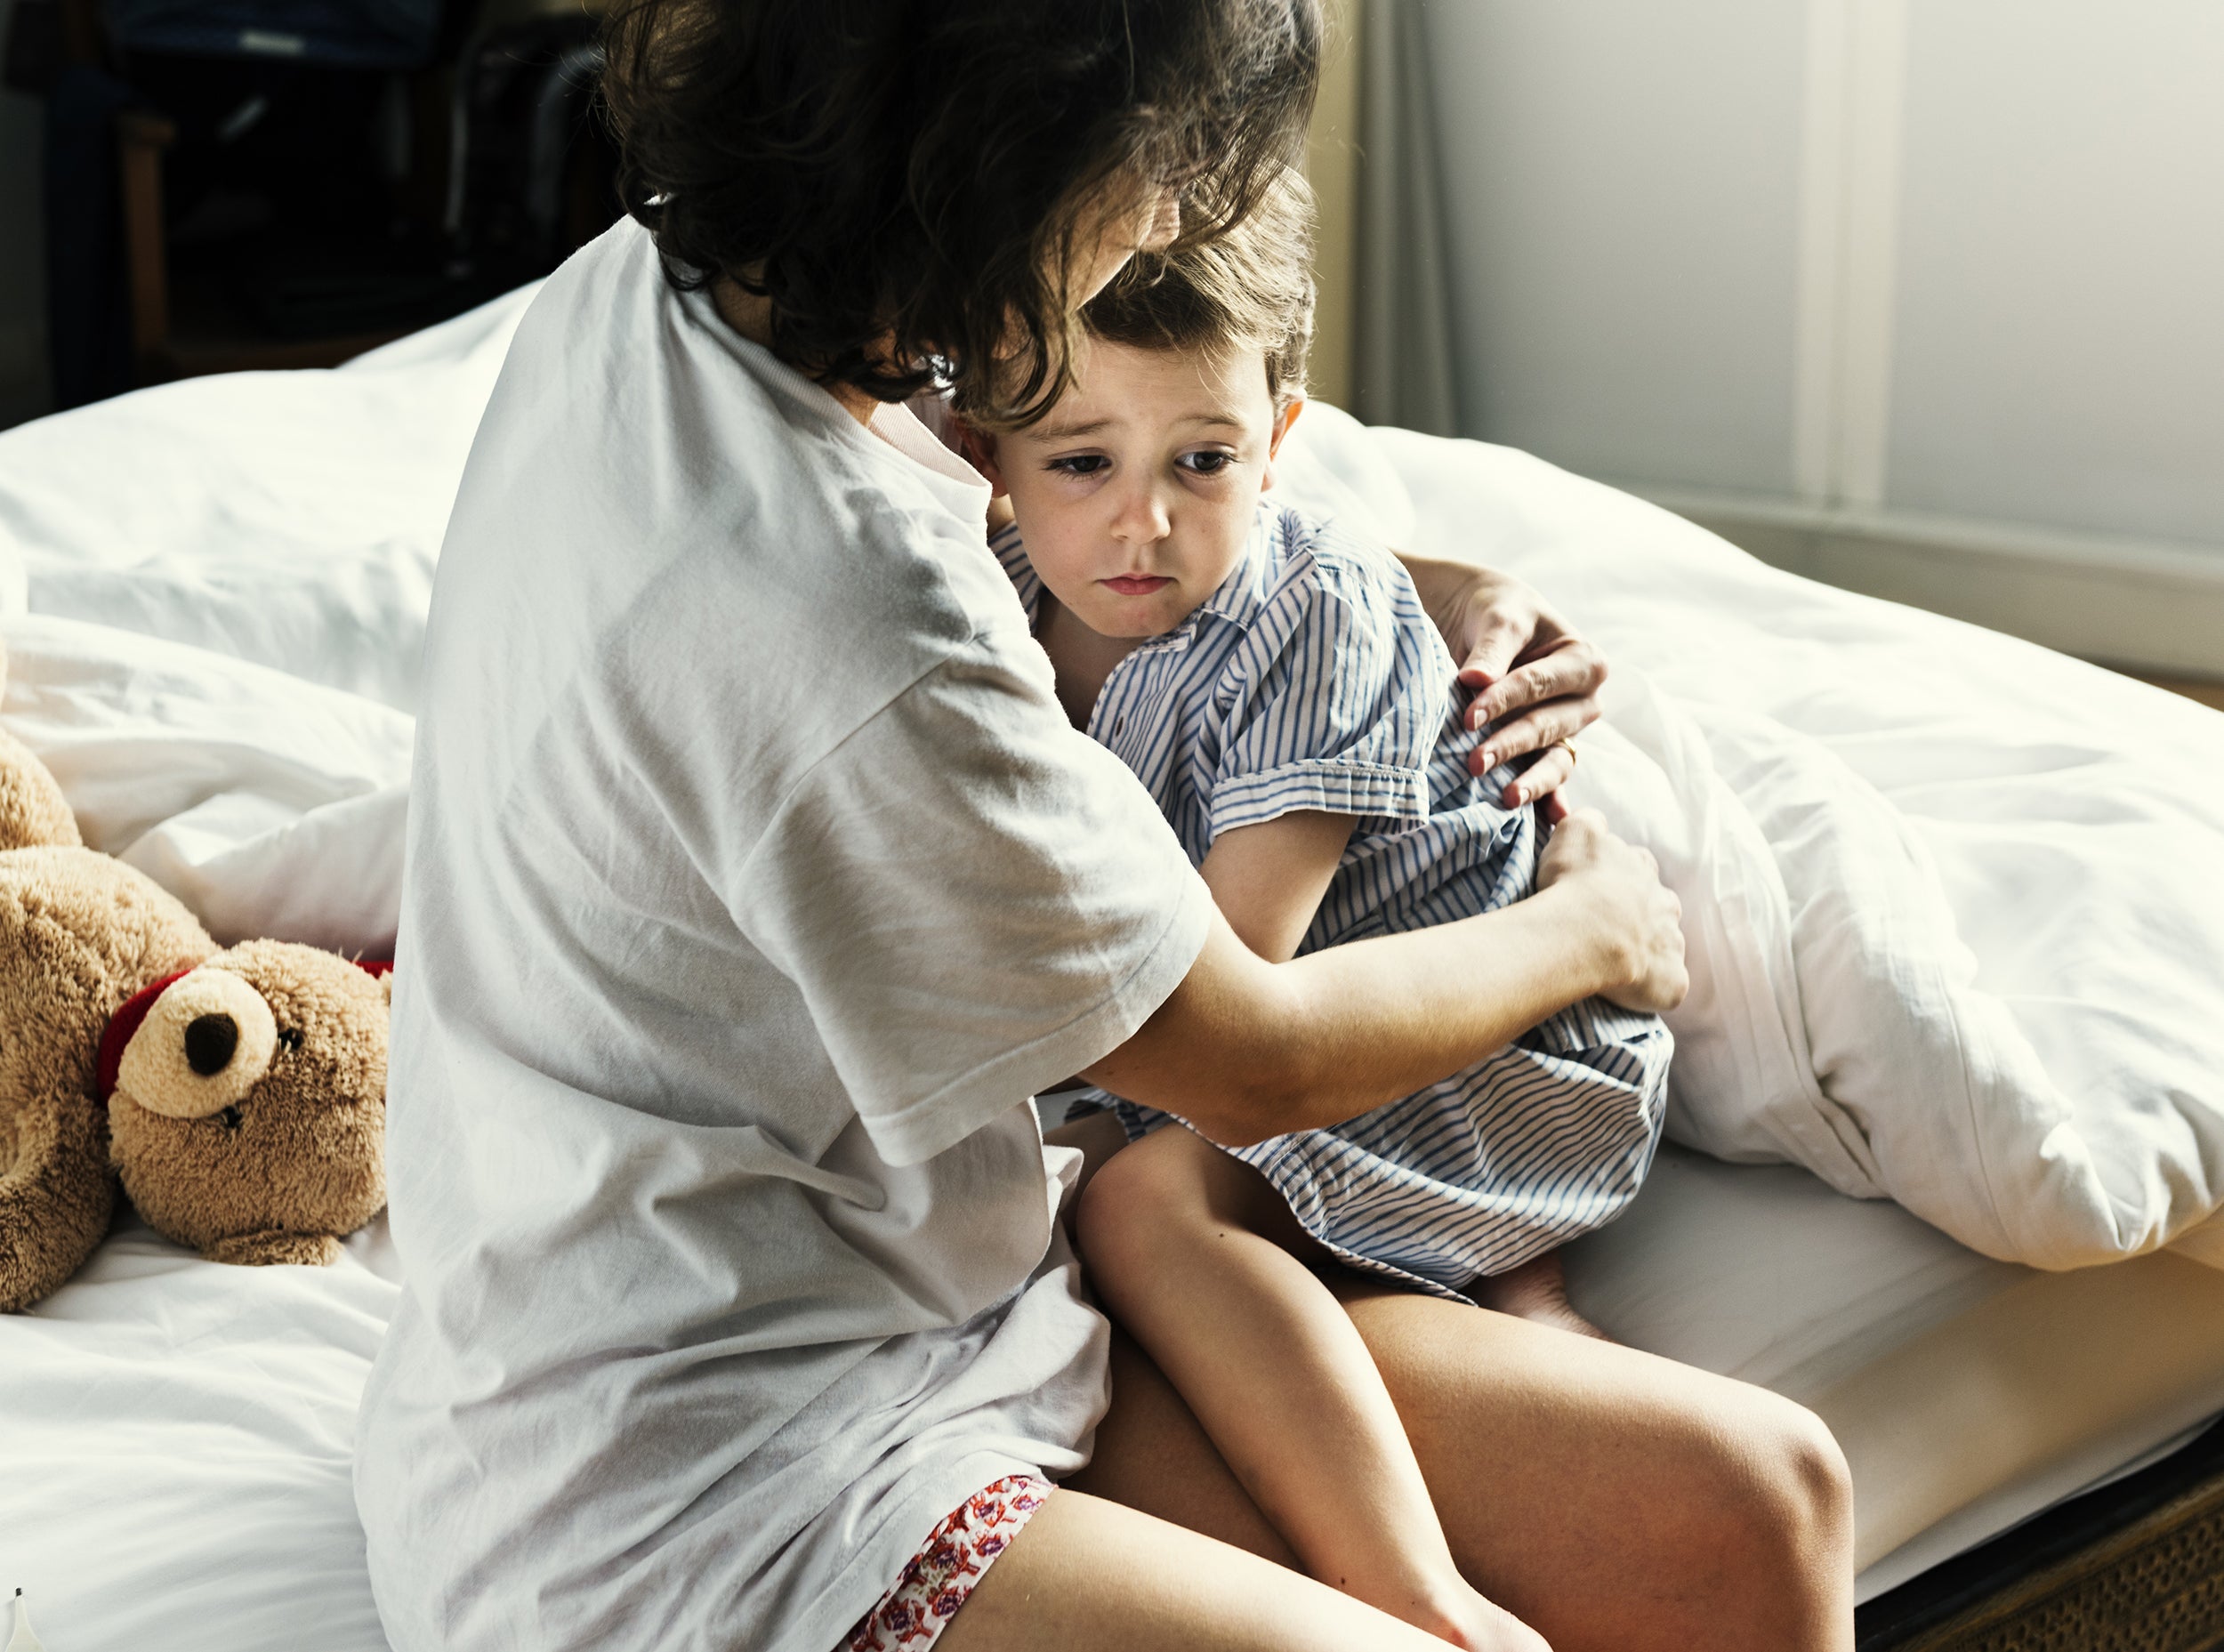 5 Signs of Stress in Children - having nightmares